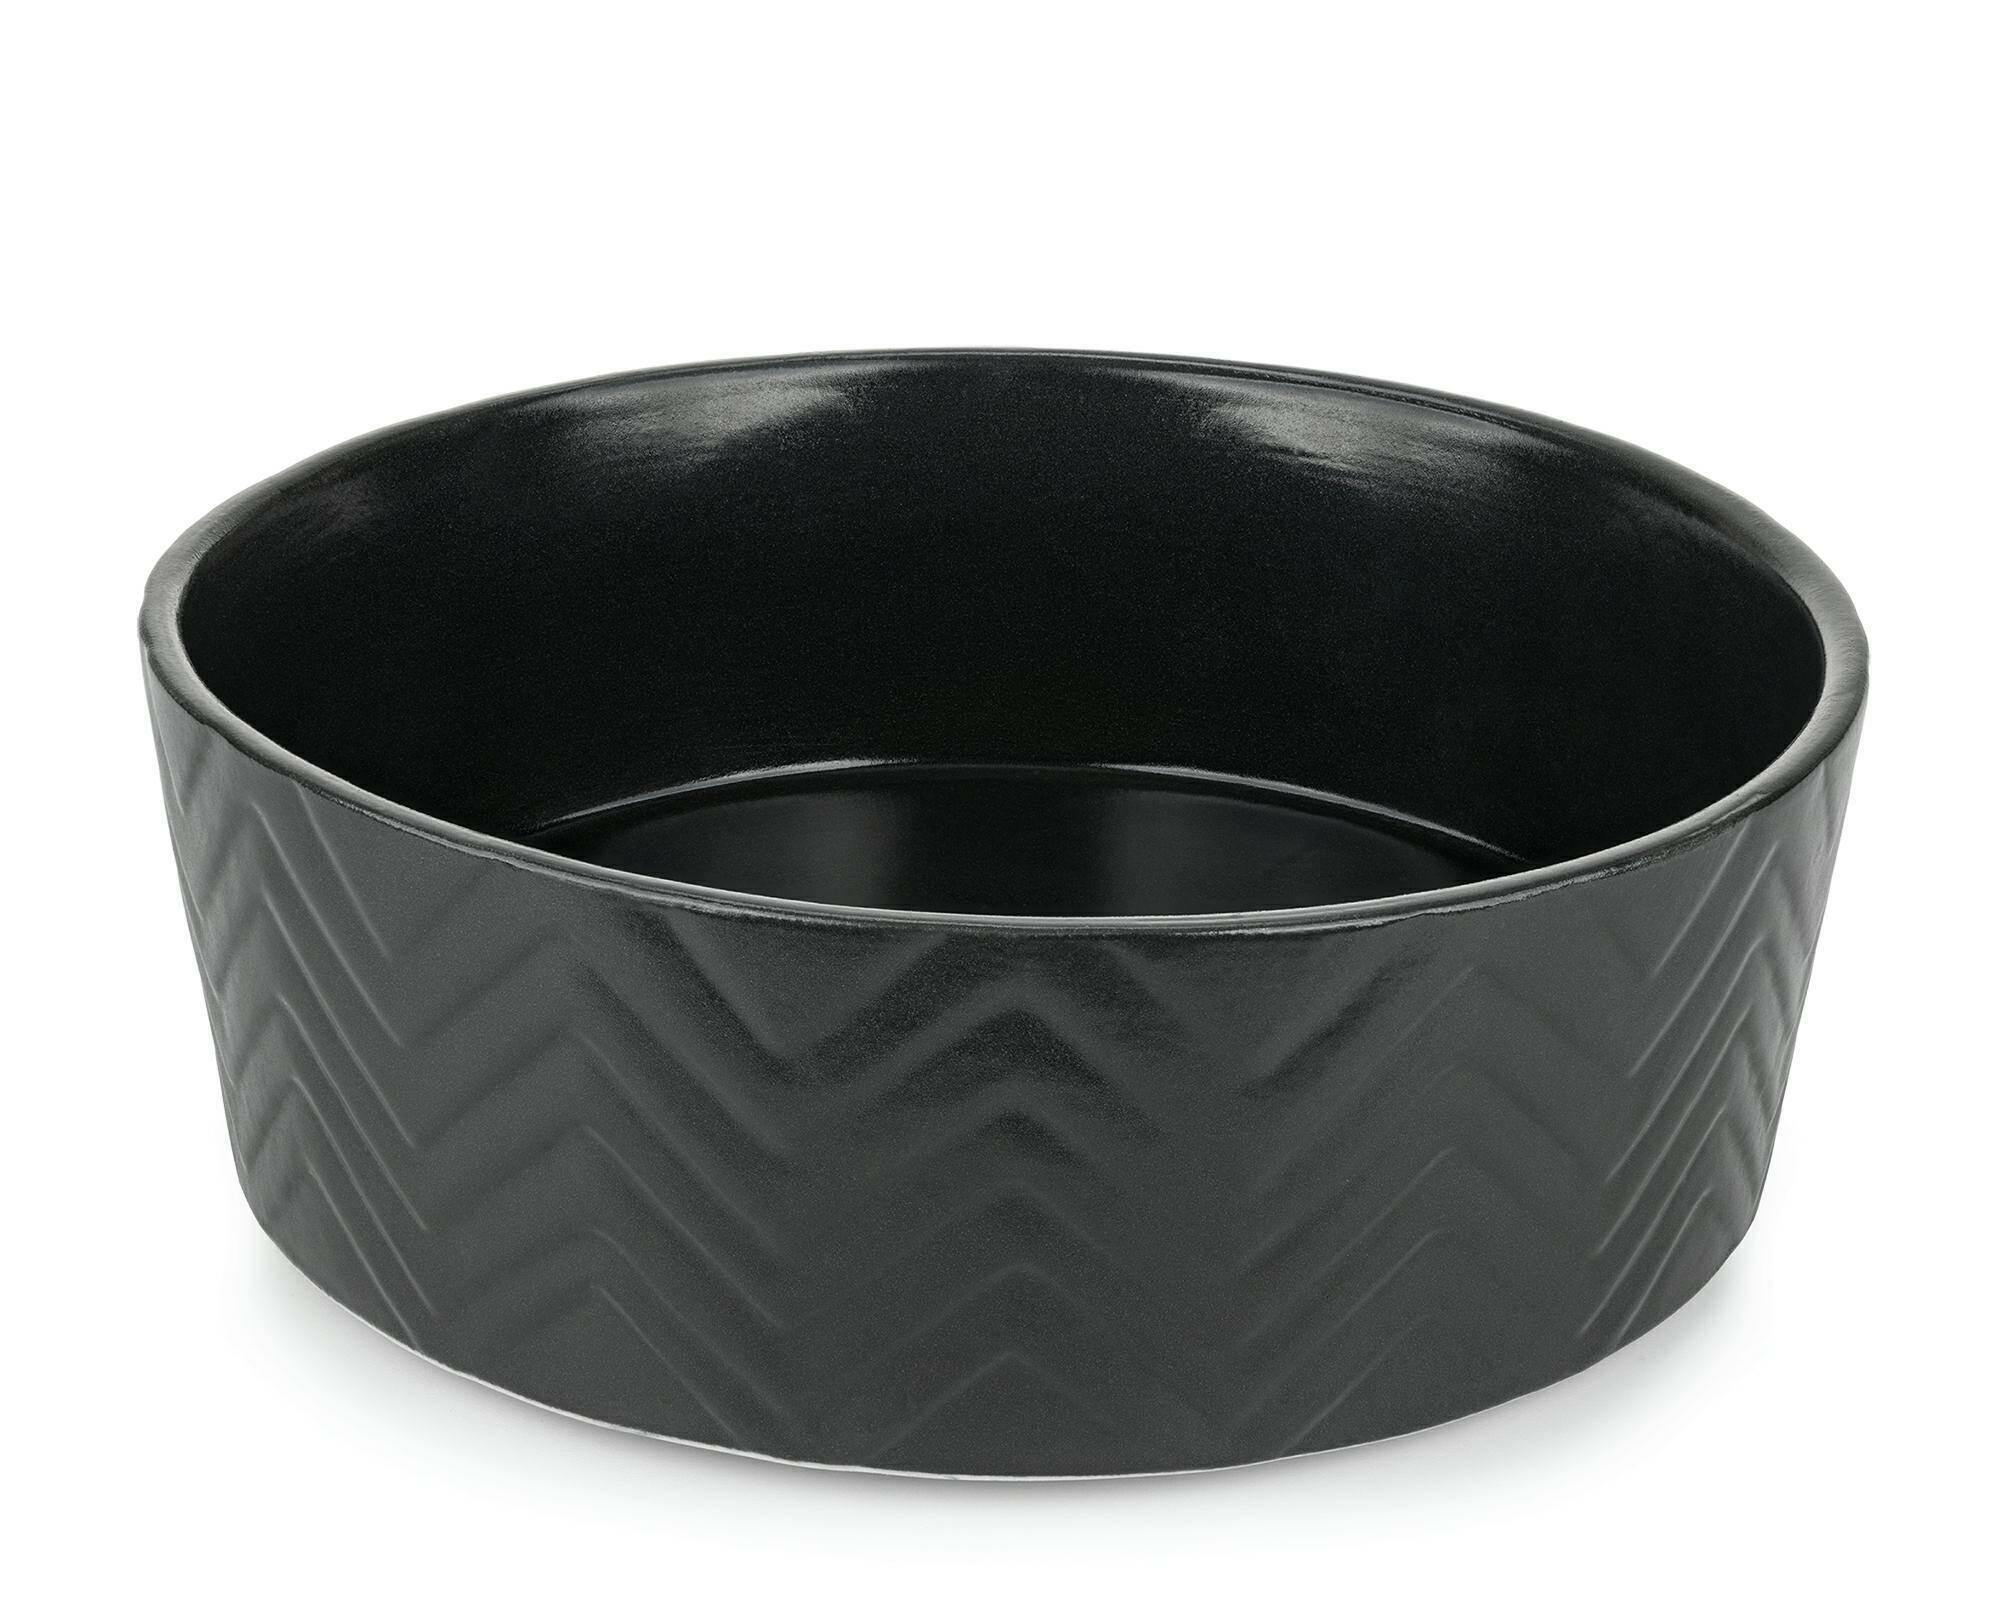 Miska ceramiczna 18cm czarna